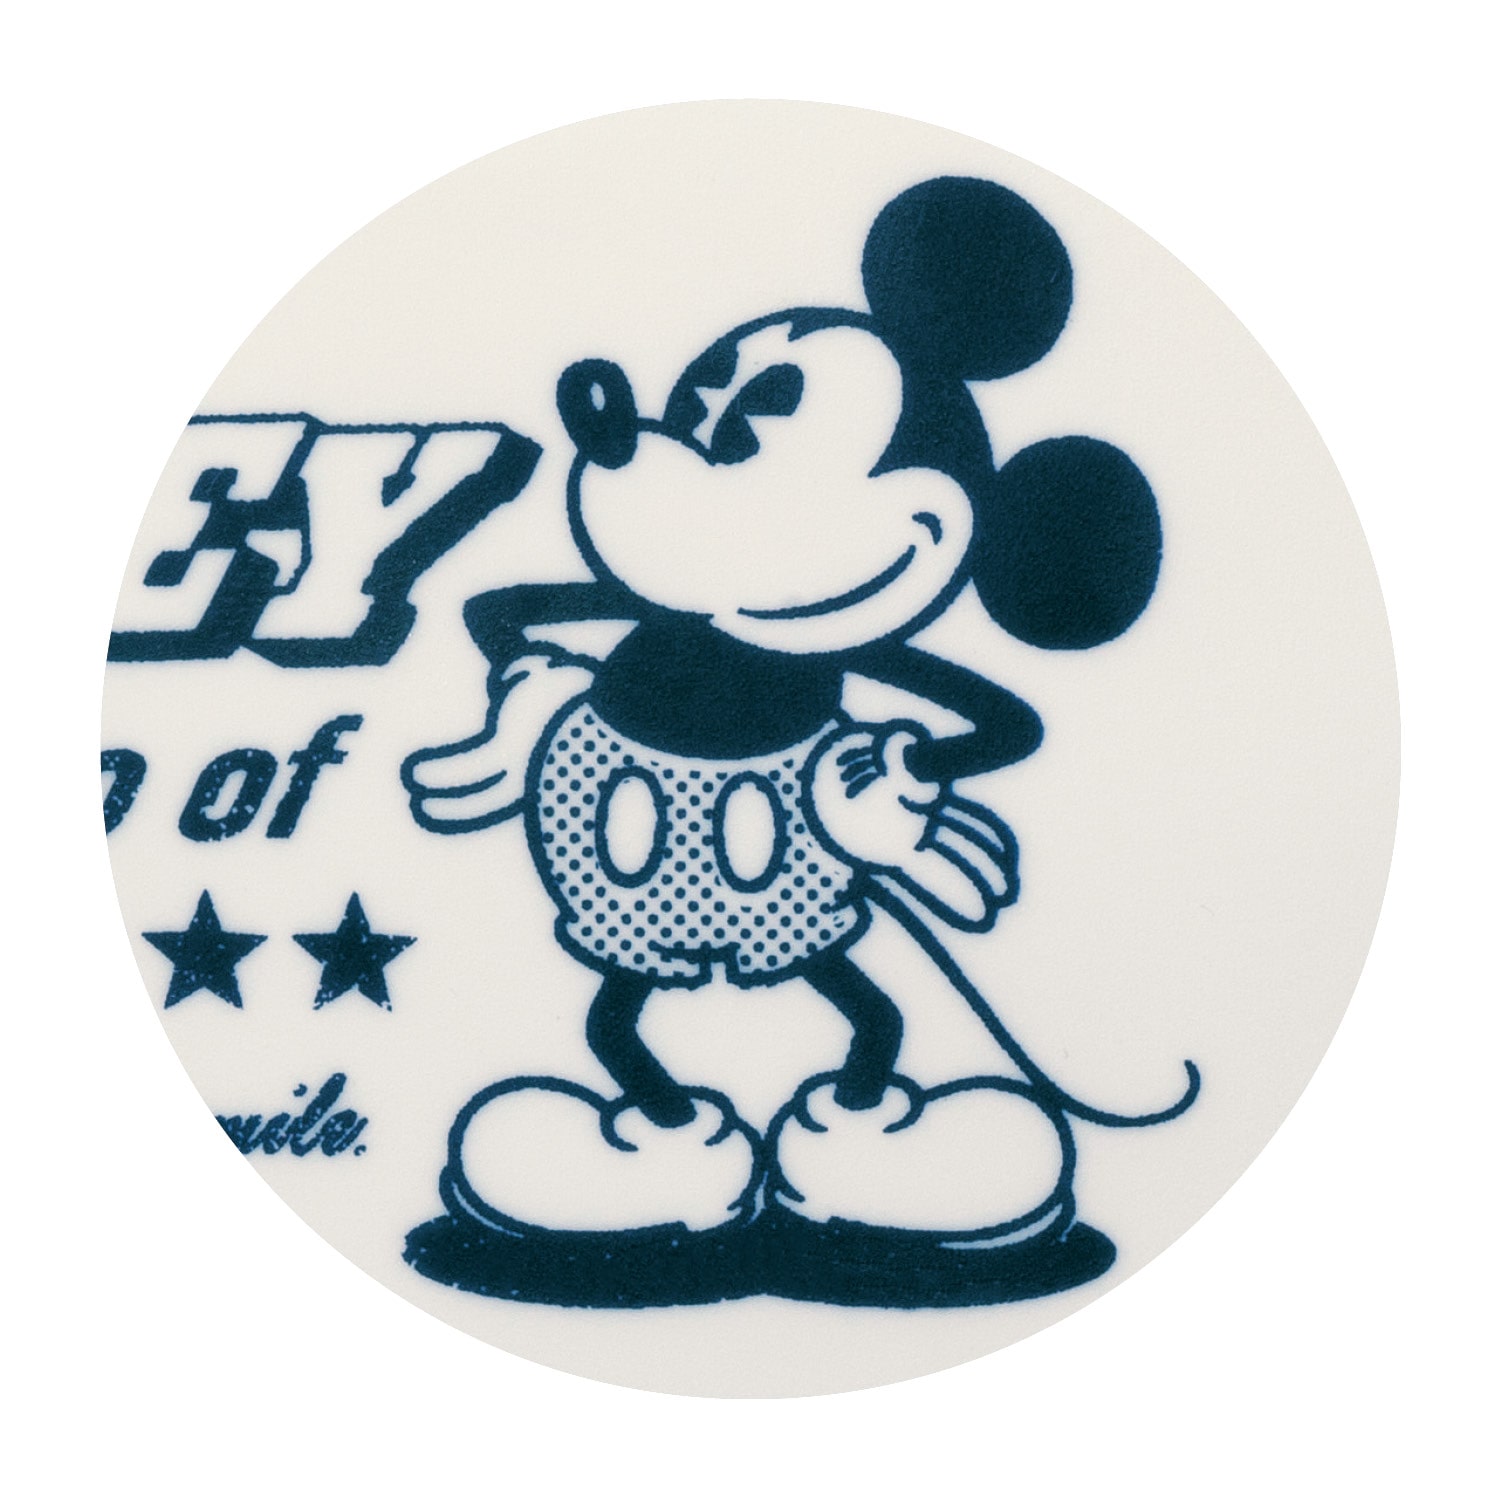 ベルメゾン ディズニー ころんとした形が可愛いウェットティッシュケース 選べるキャラクター ミッキーマウス ミッキーマウス ベルメゾン Jre Mall店 Jre Pointが 貯まる 使える Jre Mall